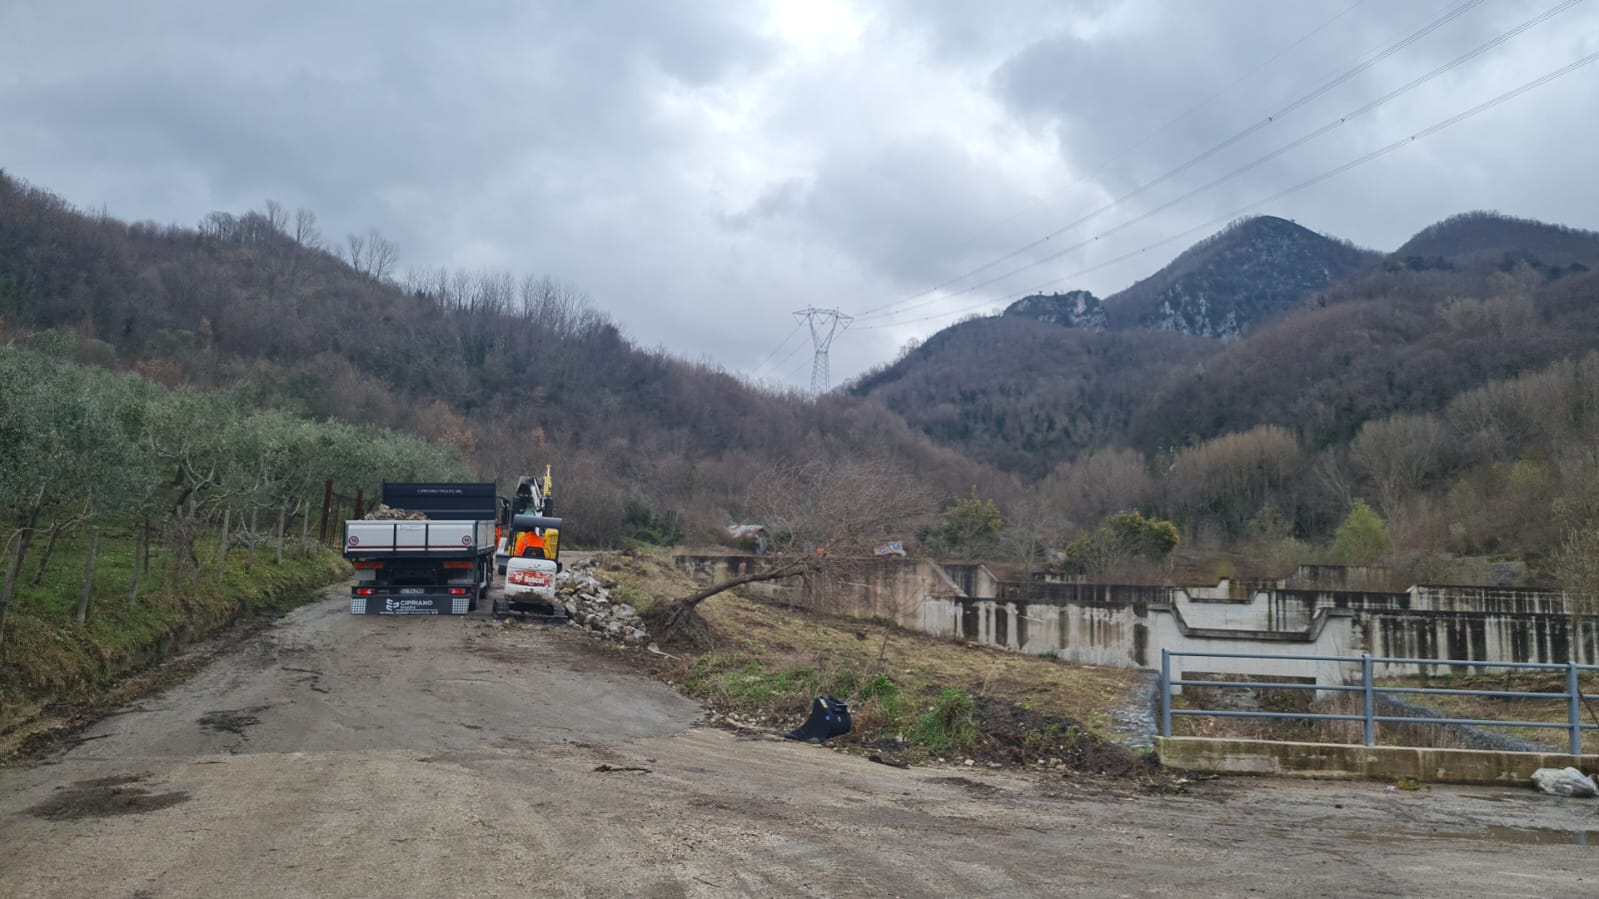 San Martino Valle Caudina|Al via i lavori di ripristino della strada comunale di Localita’ Mafariello